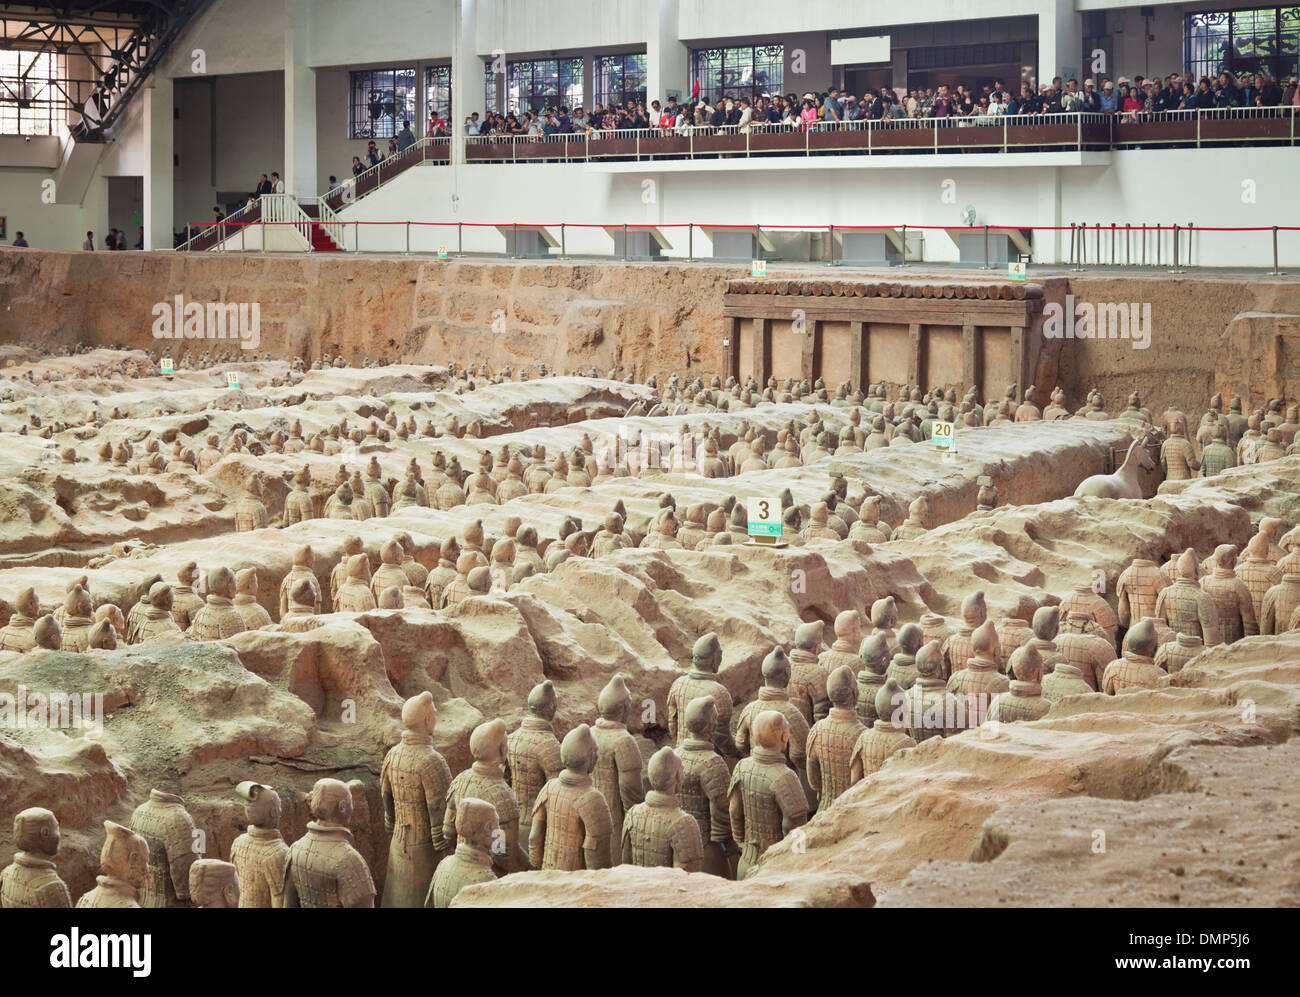 Im Inneren des Museums der Terrakotta Krieger Armee Grube Nummer 1, Xian, Provinz Shaanxi, VR China, Volksrepublik China, Asien Stockfoto